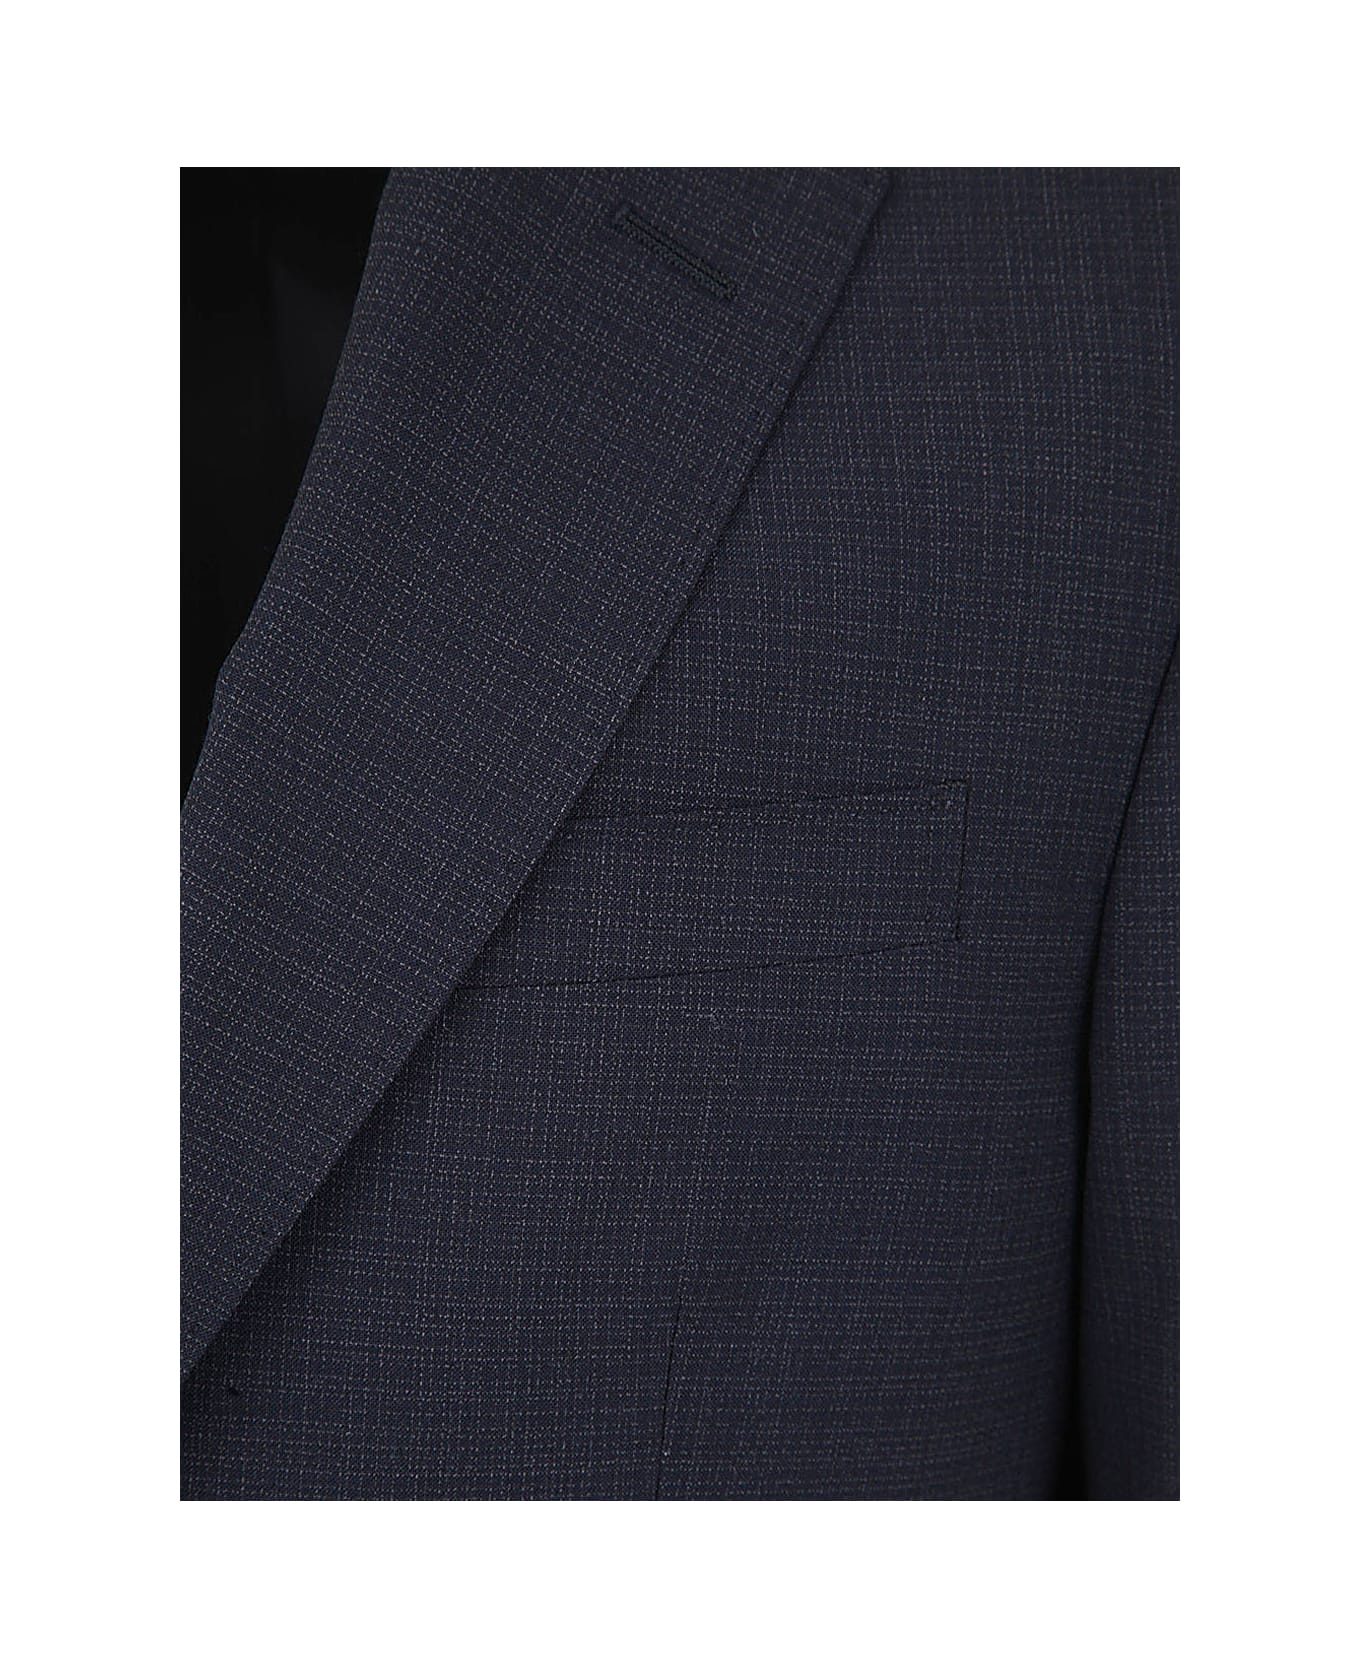 Zegna Usetheexisting Suit - Blue スーツ